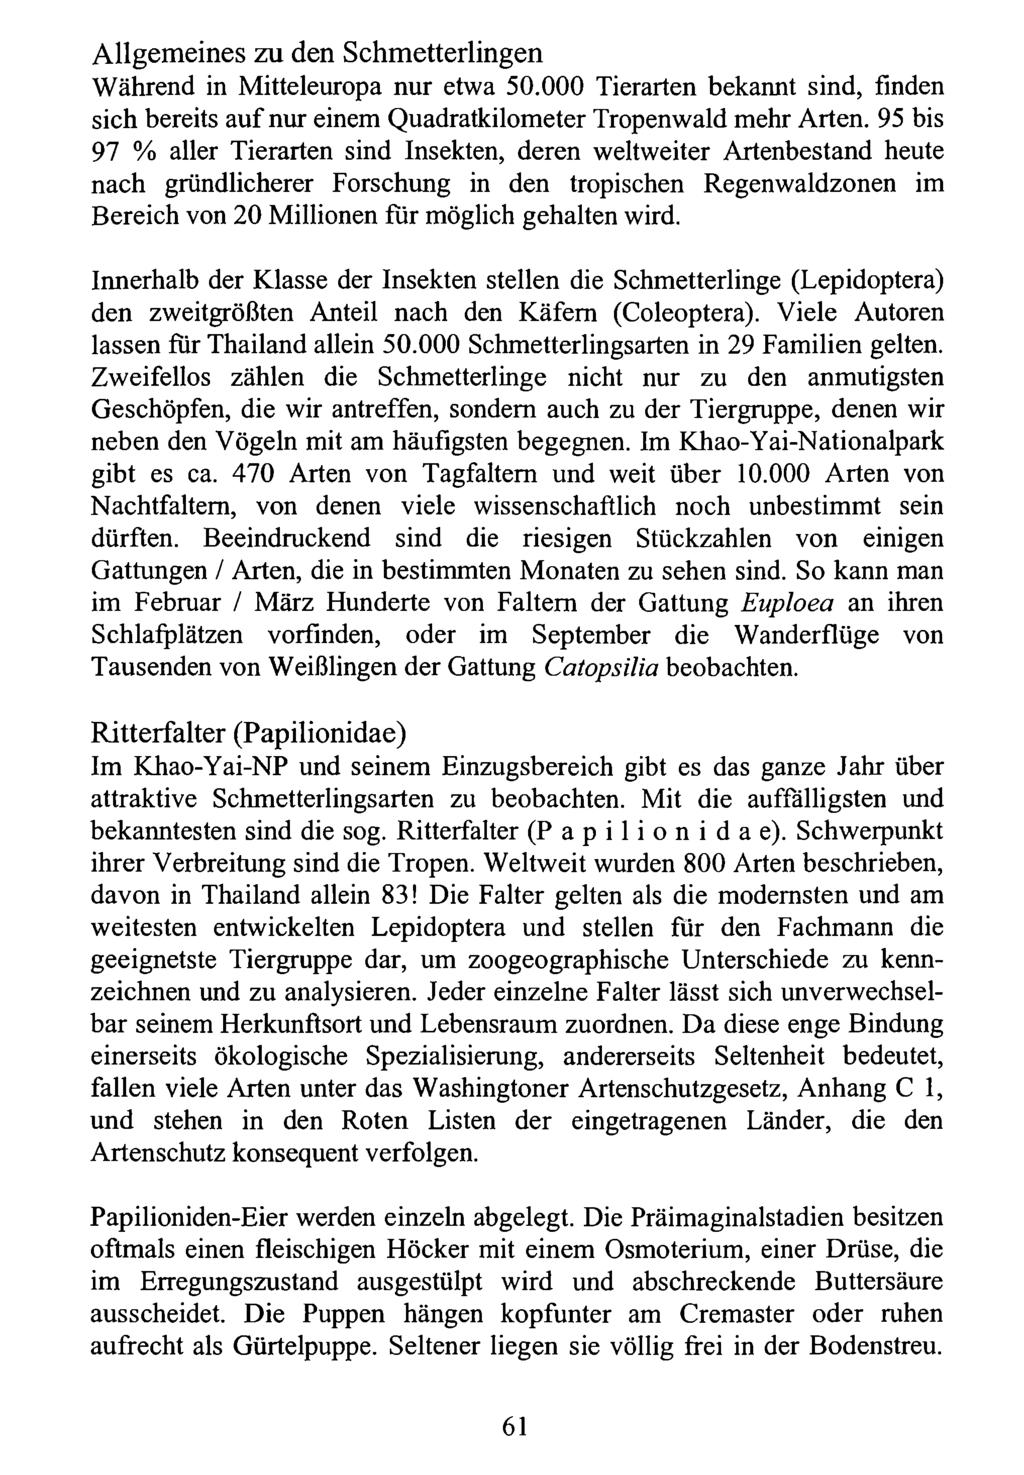 Allgemeines zu Kreis den Nürnberger Schmetterlingen Entomologen; download unter www.biologiezentrum.at Während in Mitteleuropa nur etwa 50.